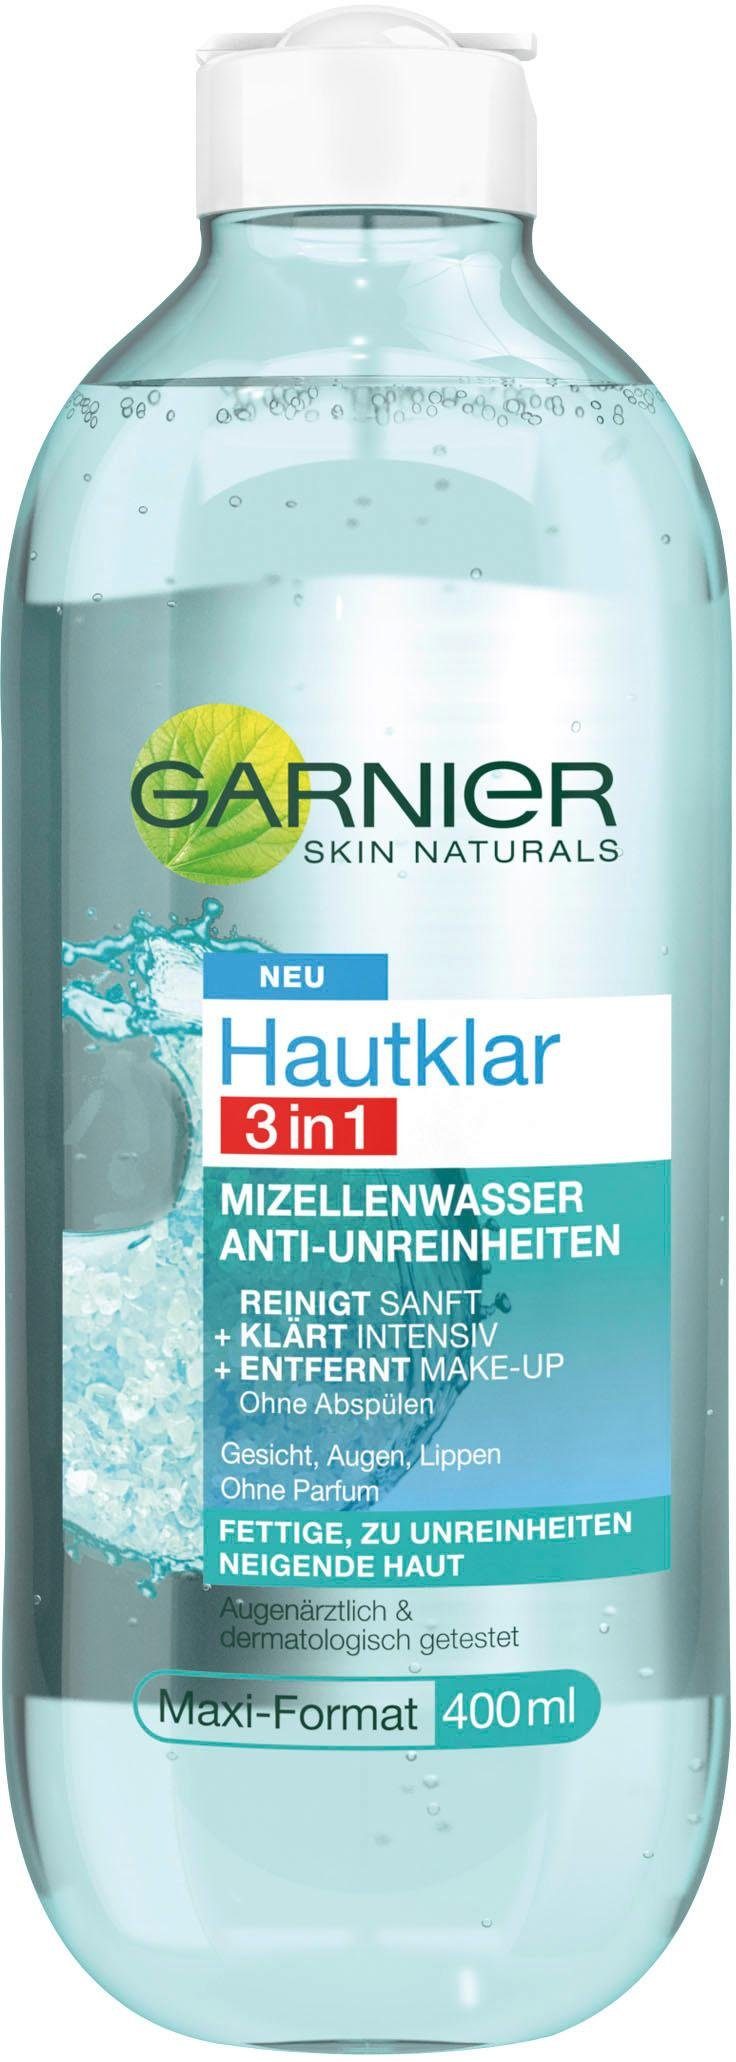 GARNIER Gesichtswasser Hautklar Mizellenwasser 3in1